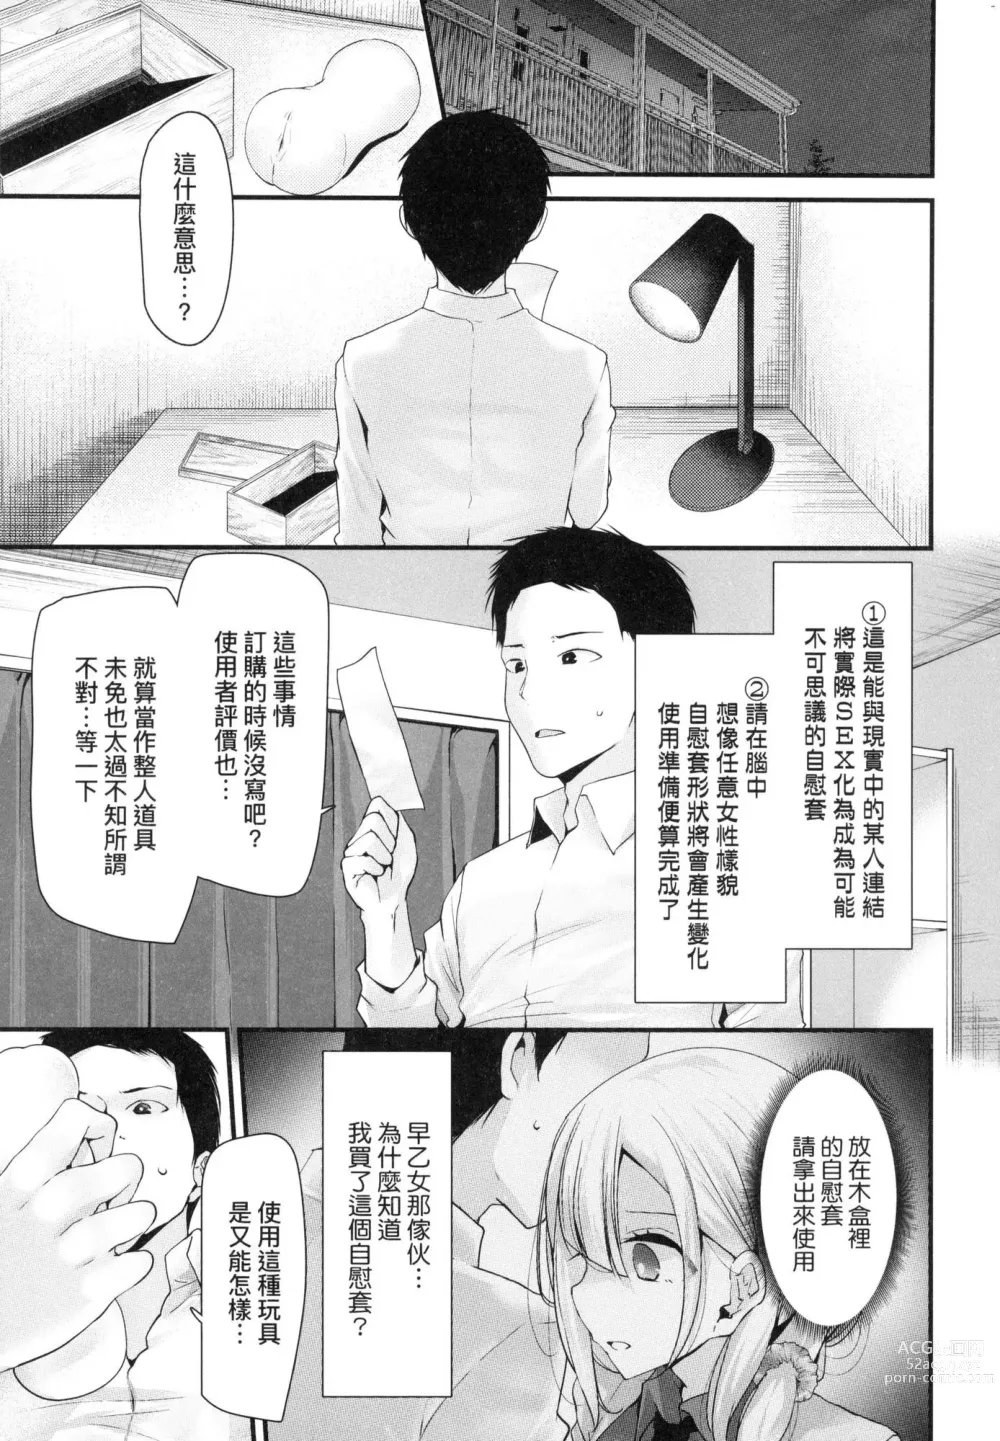 Page 19 of manga 自慰套教室-新學期- 女學生播種懲罰計畫 (decensored)